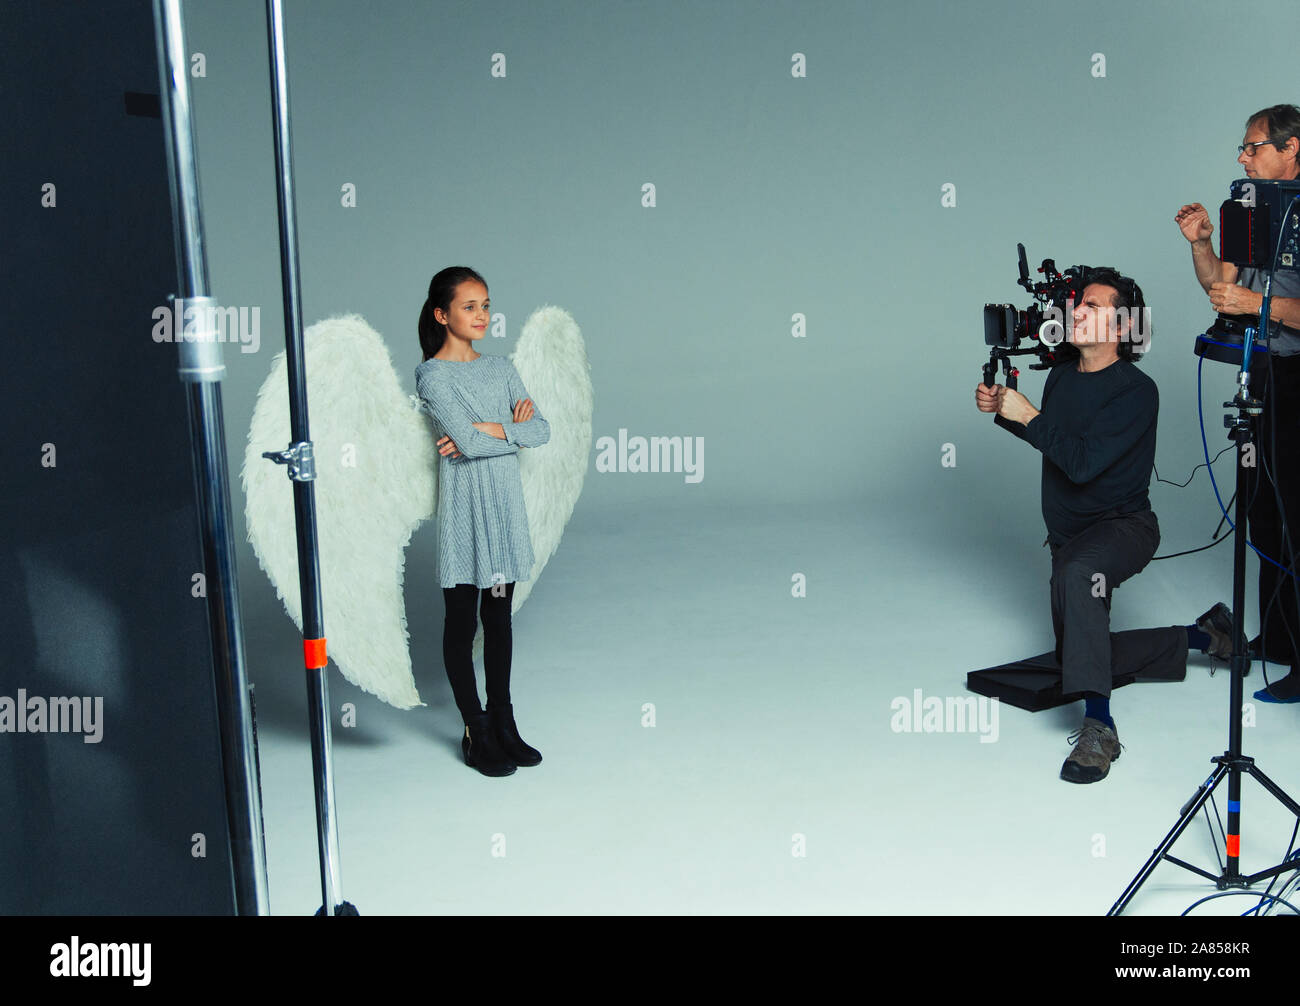 Chica en alas de ángel posando para los fotógrafos durante la sesión fotográfica en studio Foto de stock